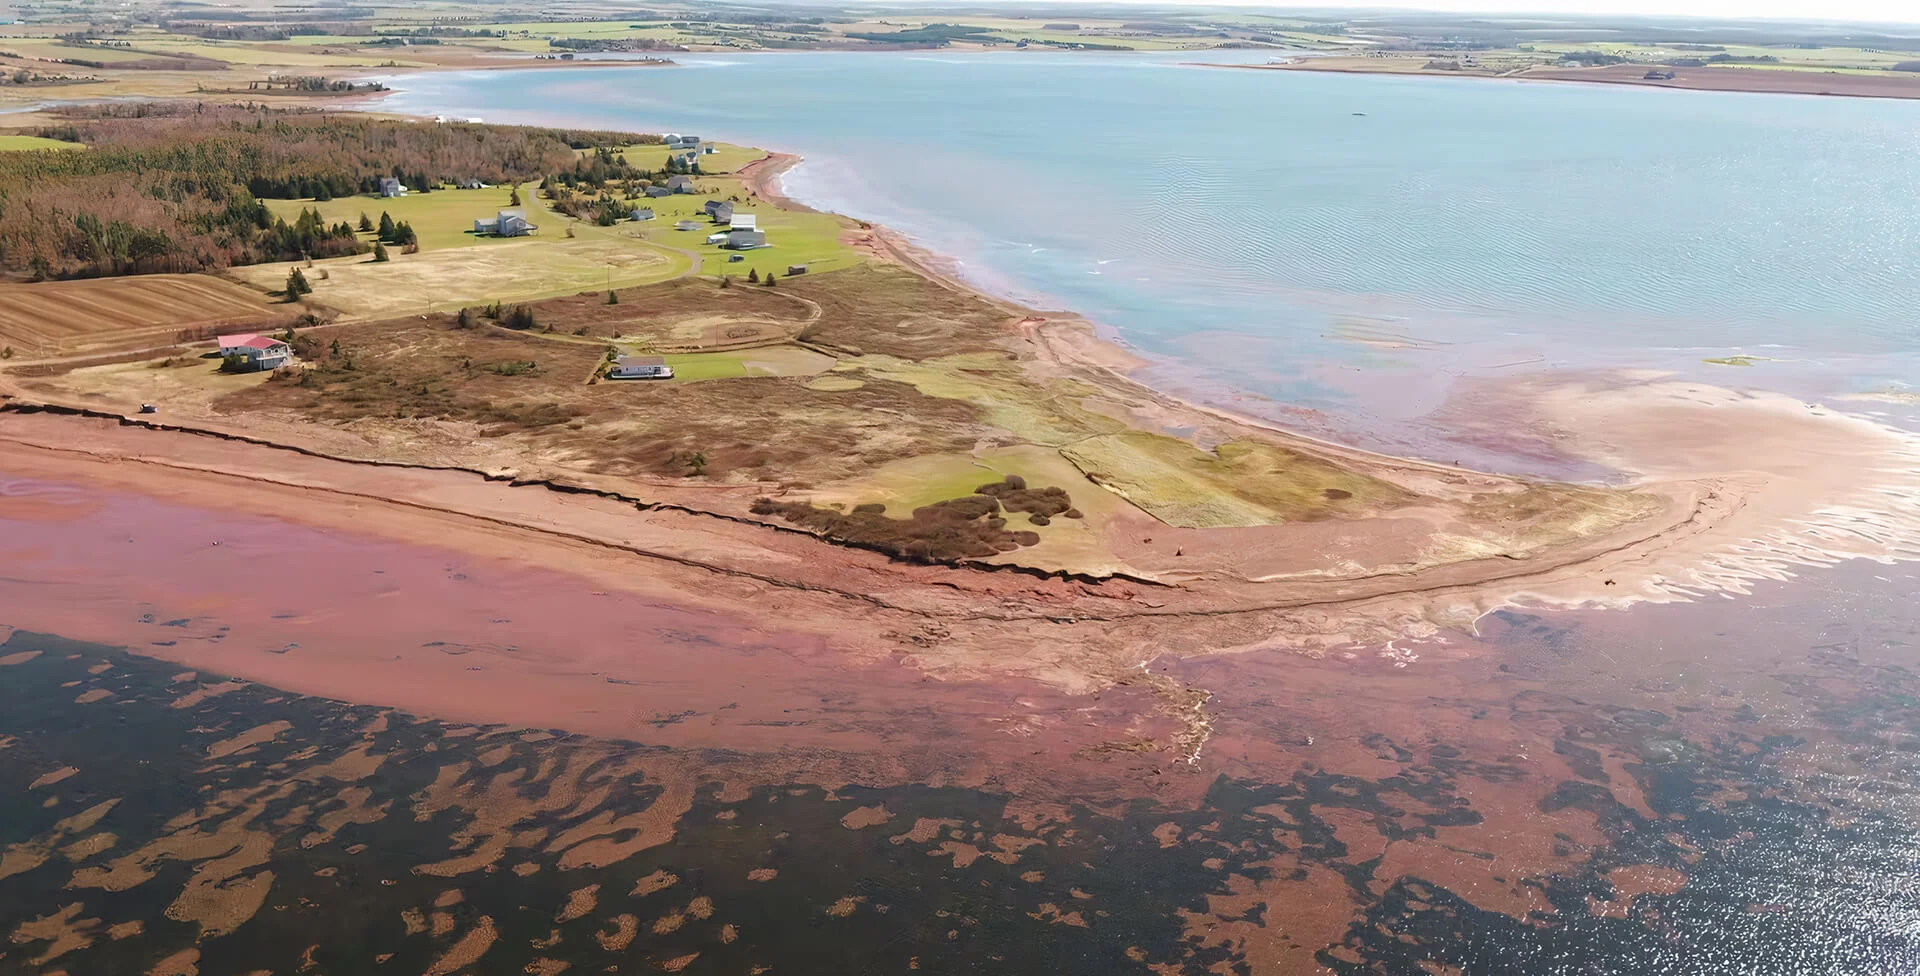 Drones record 'unprecedented' damage to P.E.I.'s coastline from Fiona